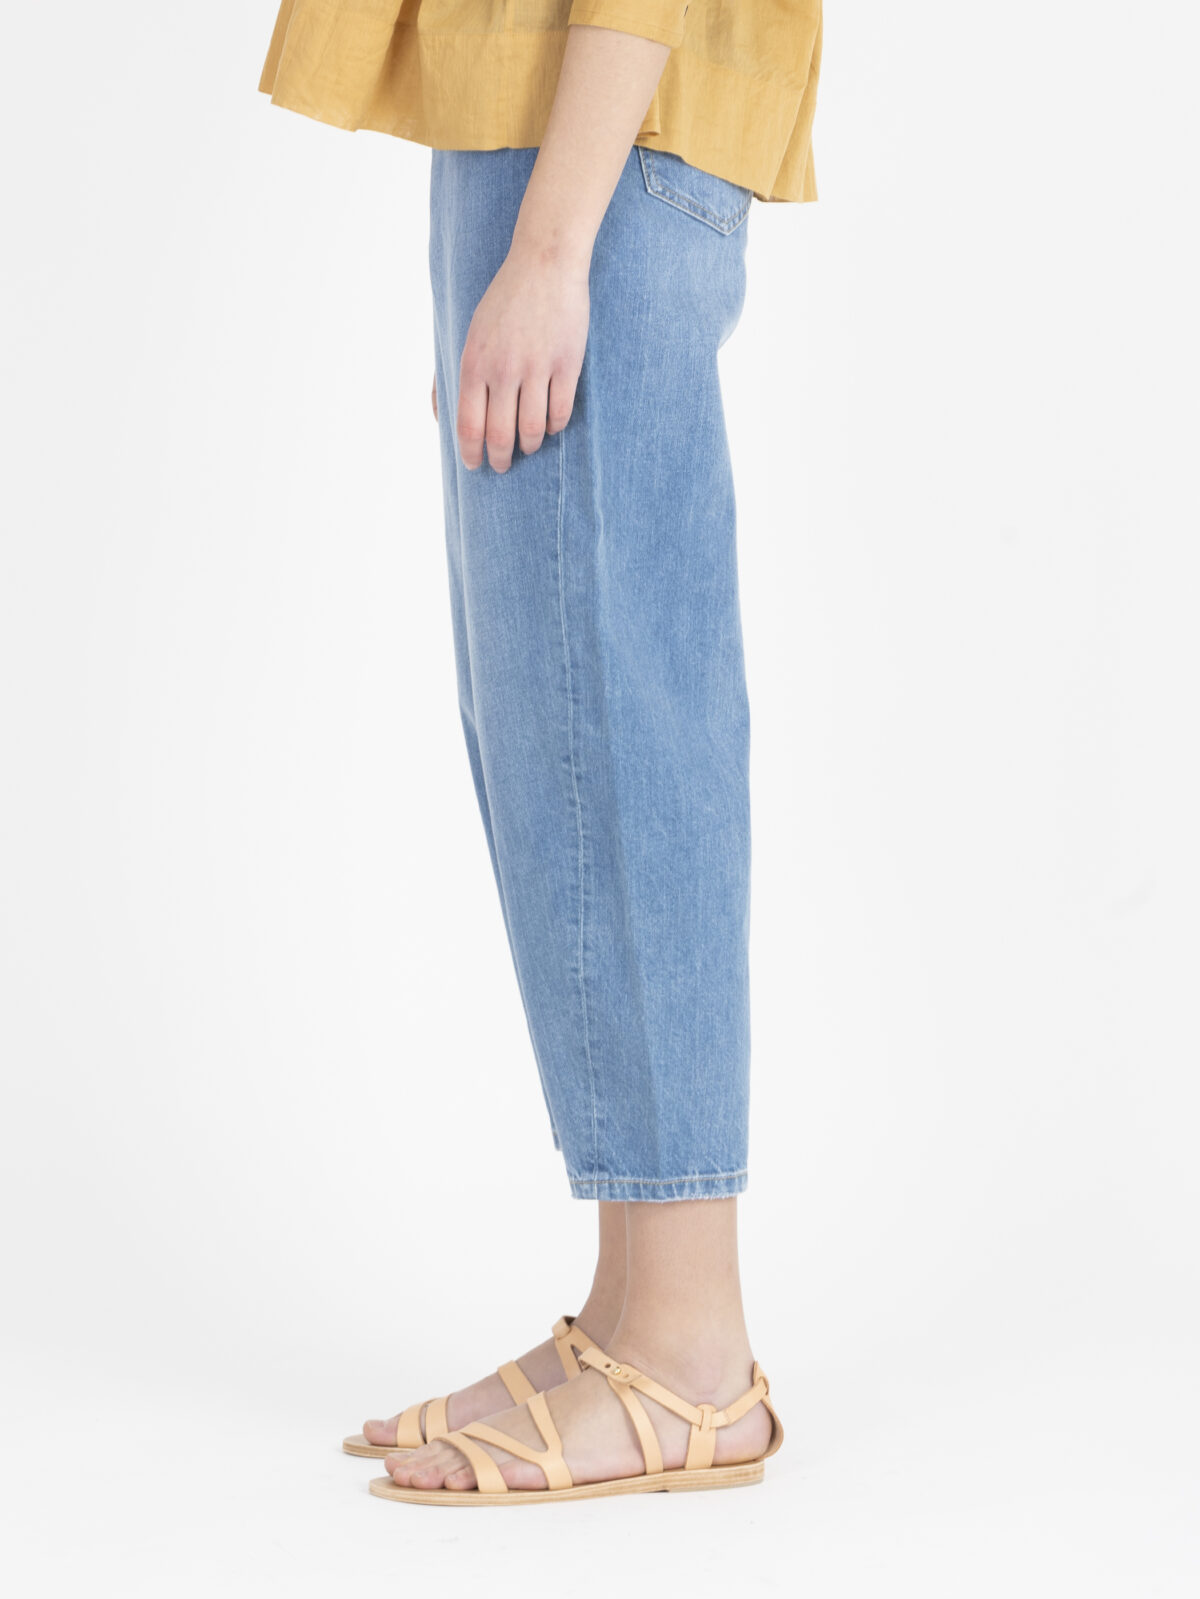 jemma-washed-blue-denim-jeans-high-waisted-cropped-lab-dip-matchboxathens